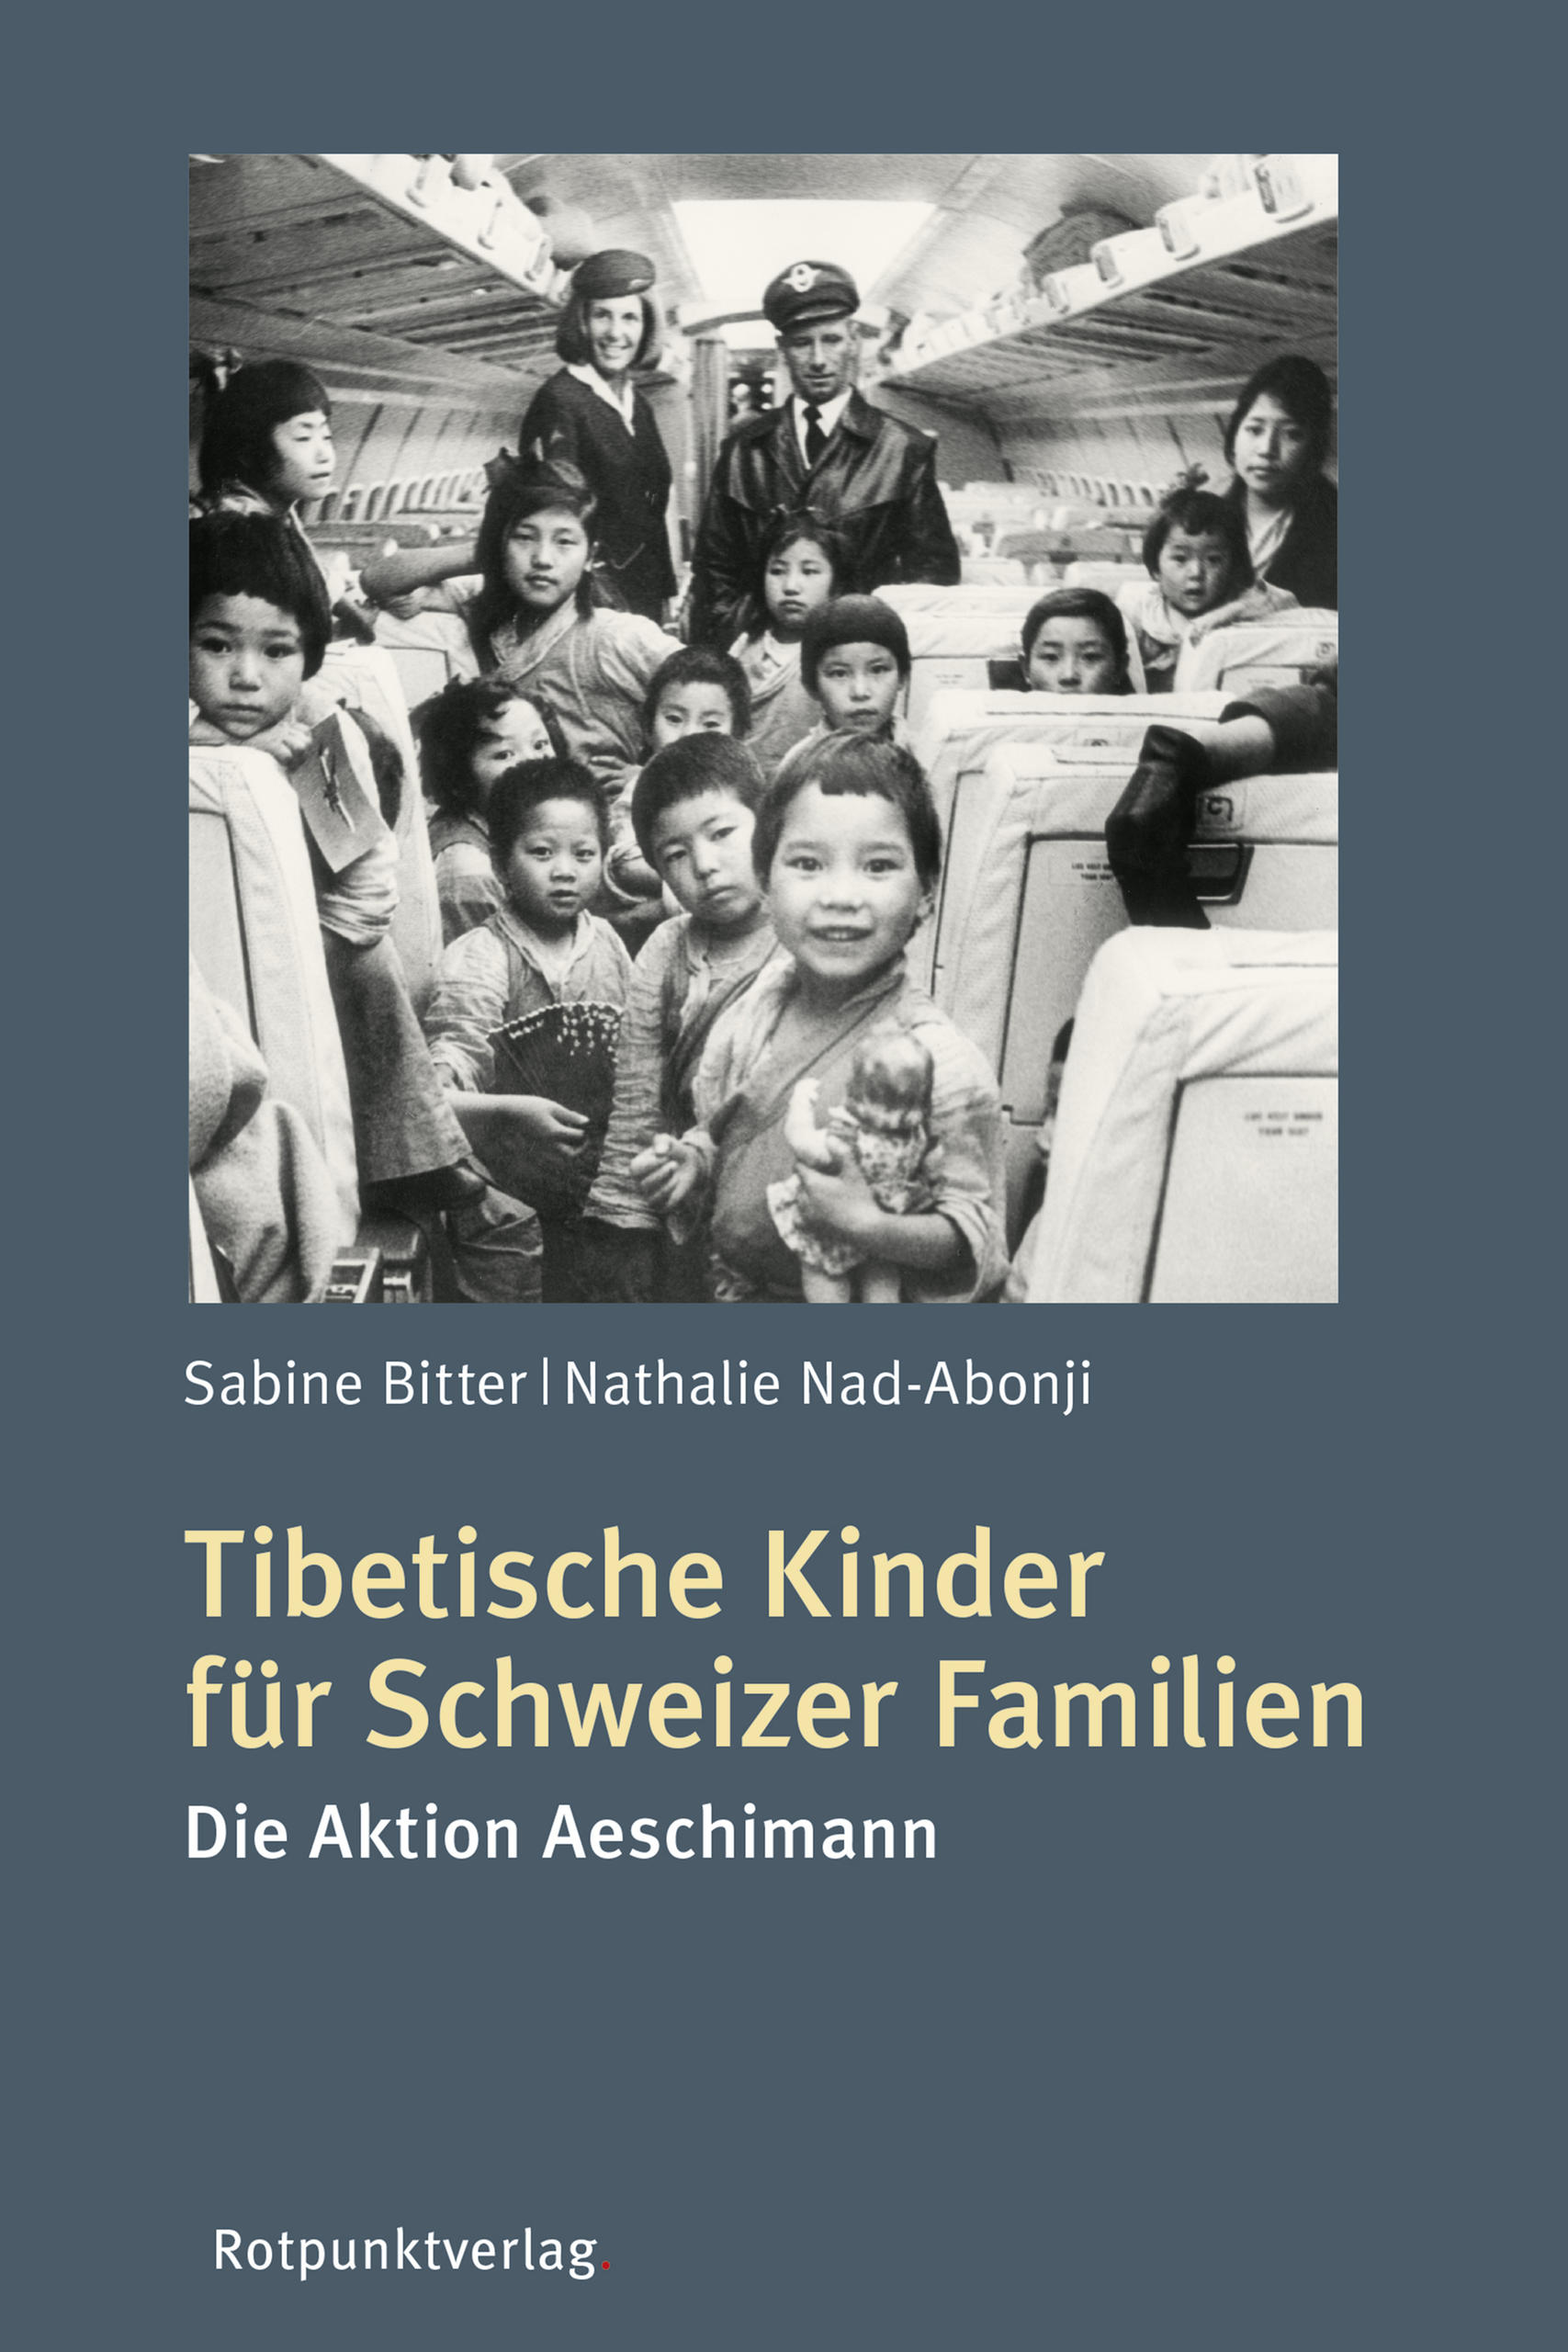 غلاف كتاب عن أطفال من التبت تم استقبالهم ثم تبنيهم في سويسرا ويُرى فيه مجموعة من الأطفال المبتسمين على متن قطار